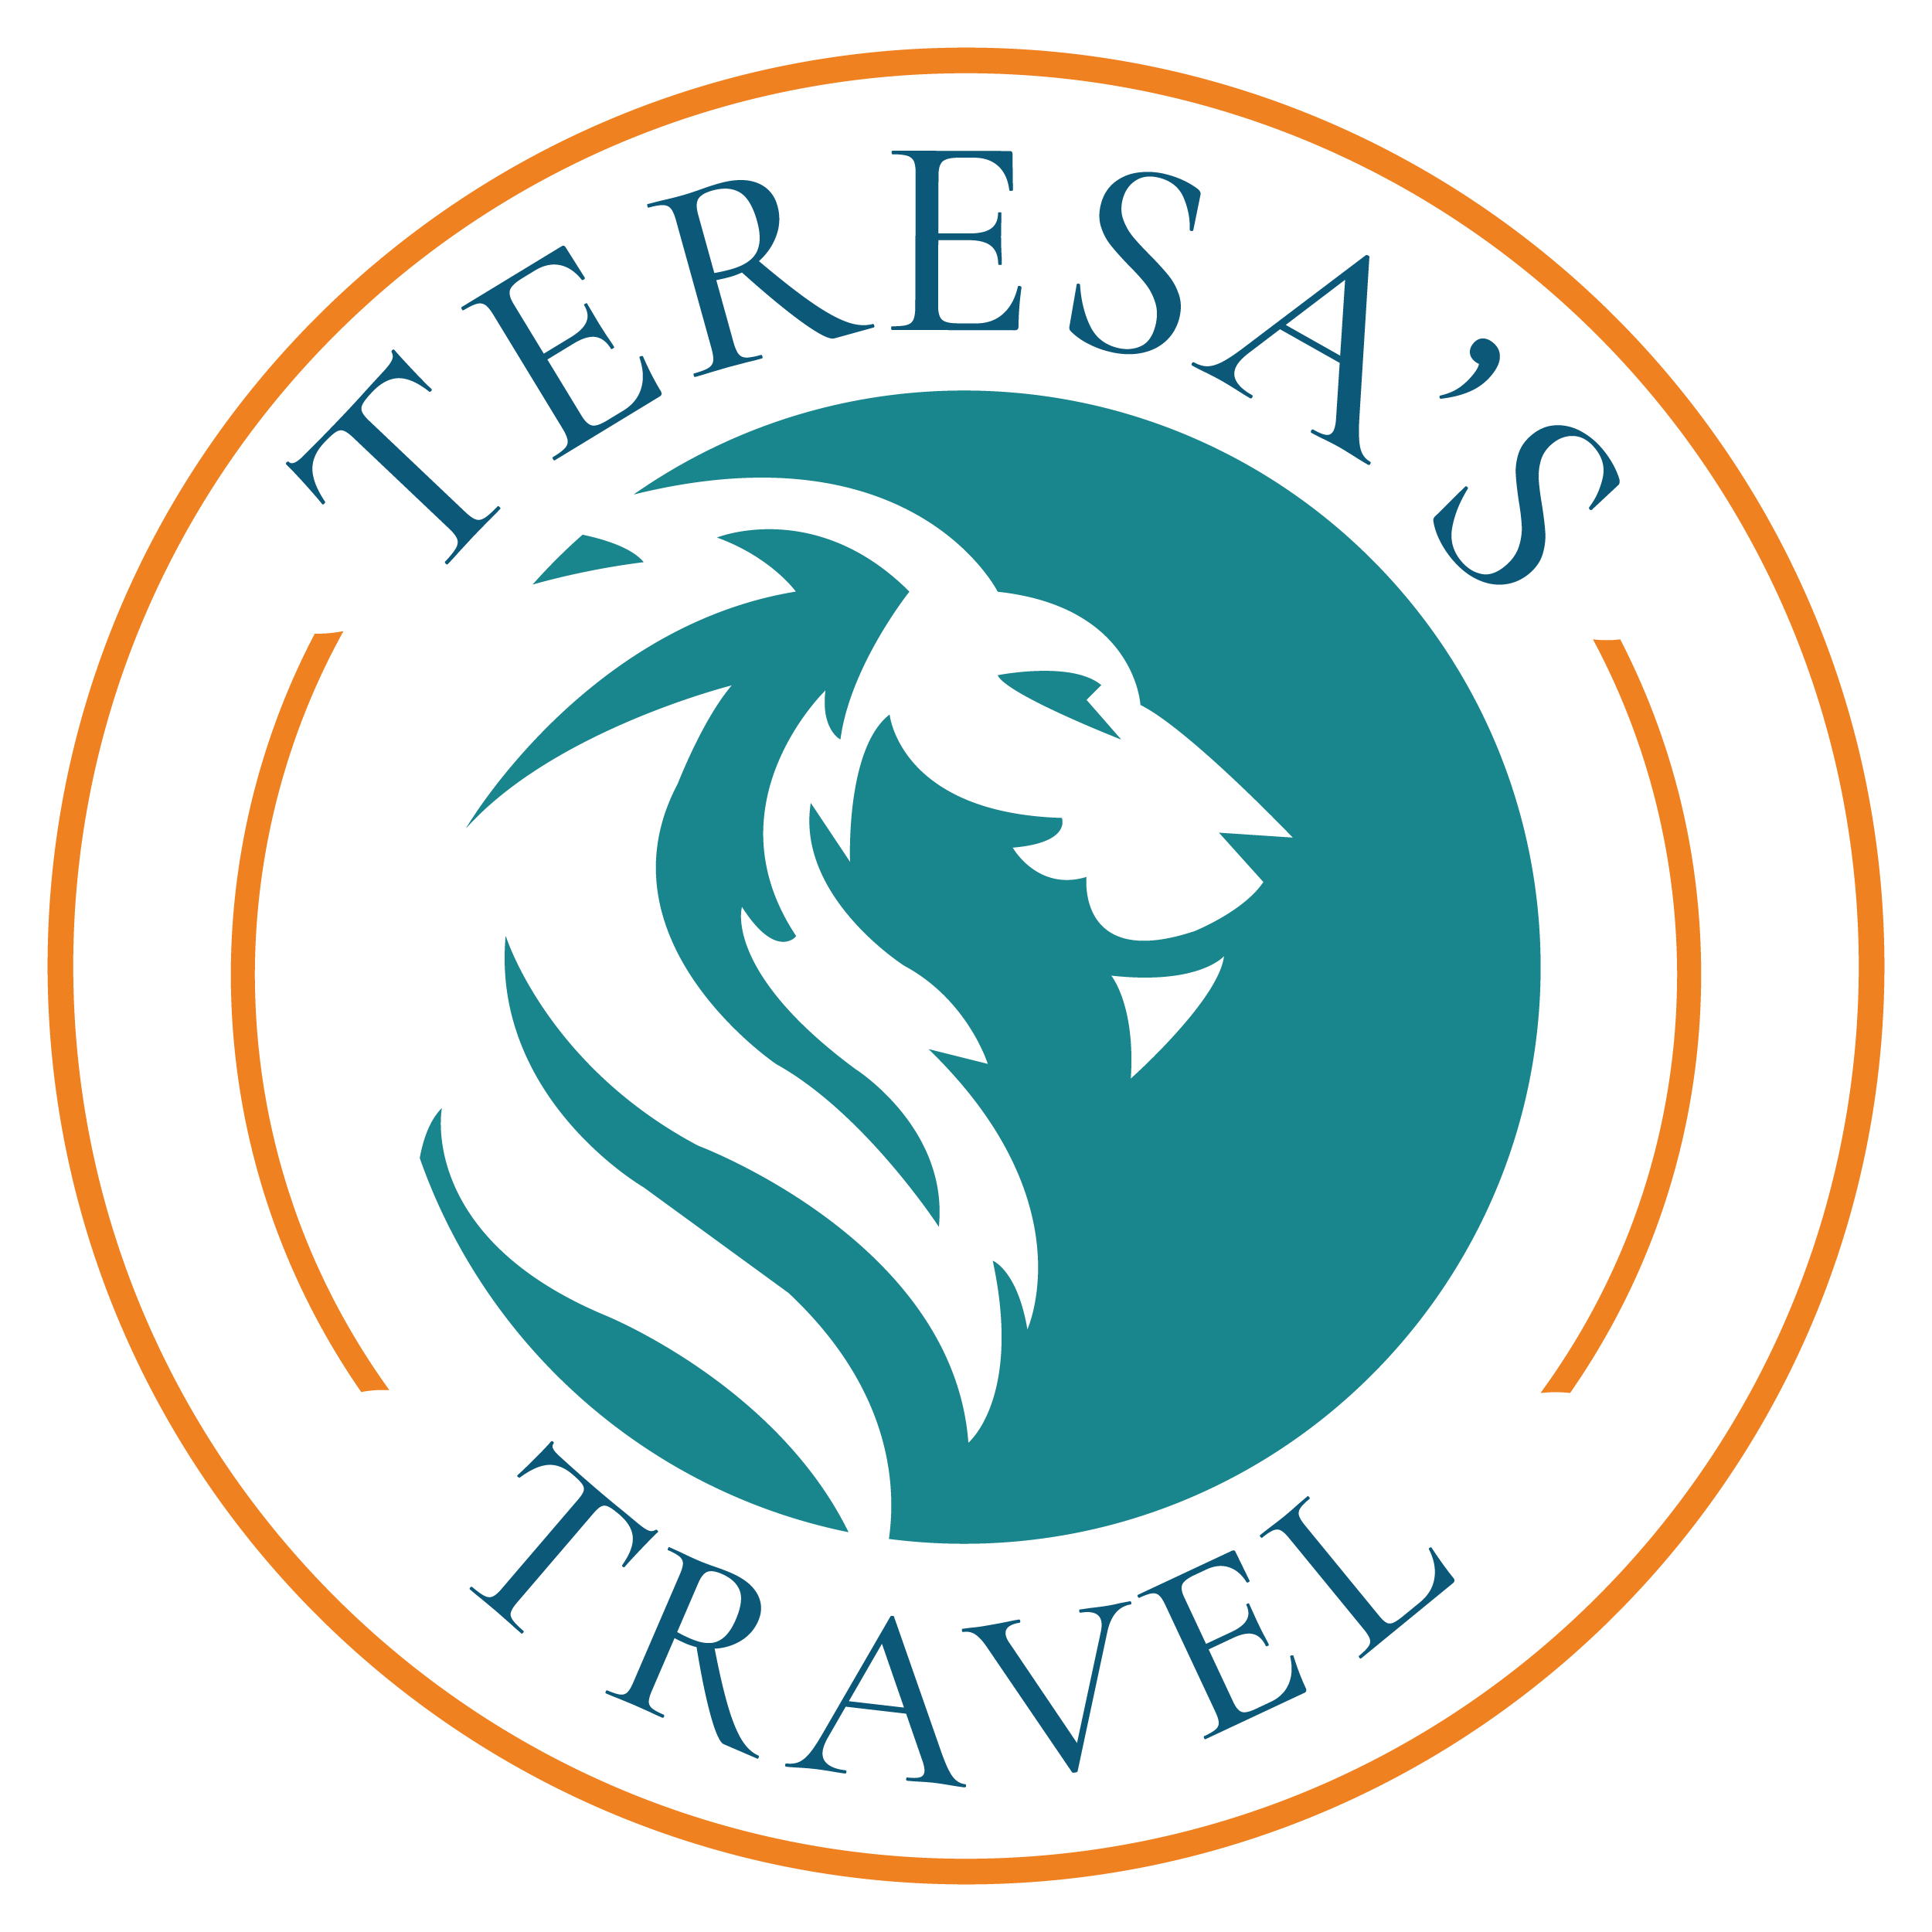 teresa's travel logo